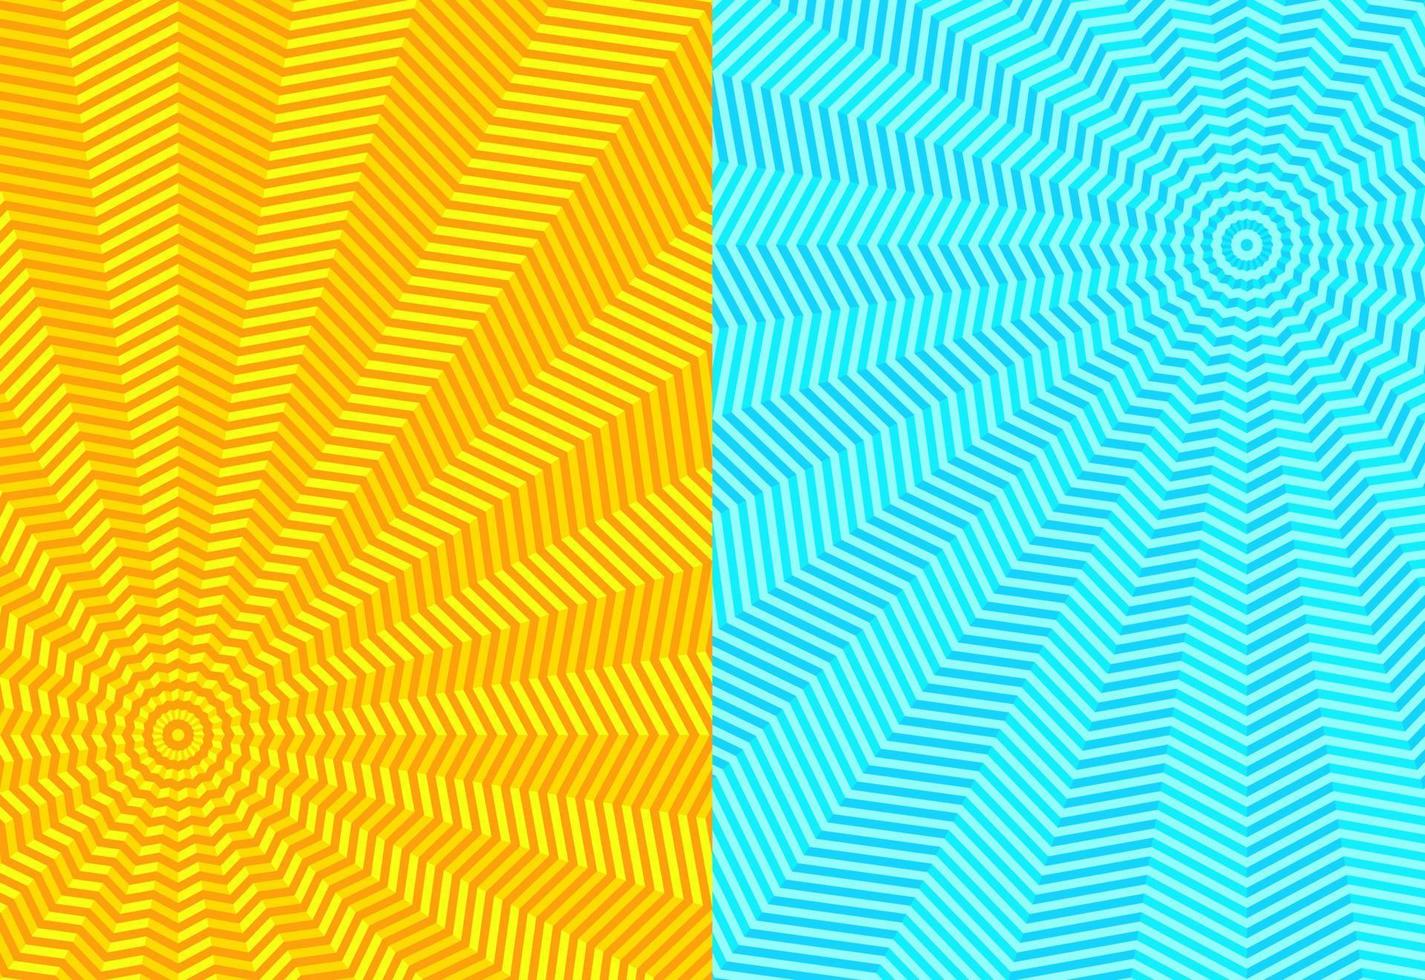 m13 - illusione blu giallo astratto sfondo vettore